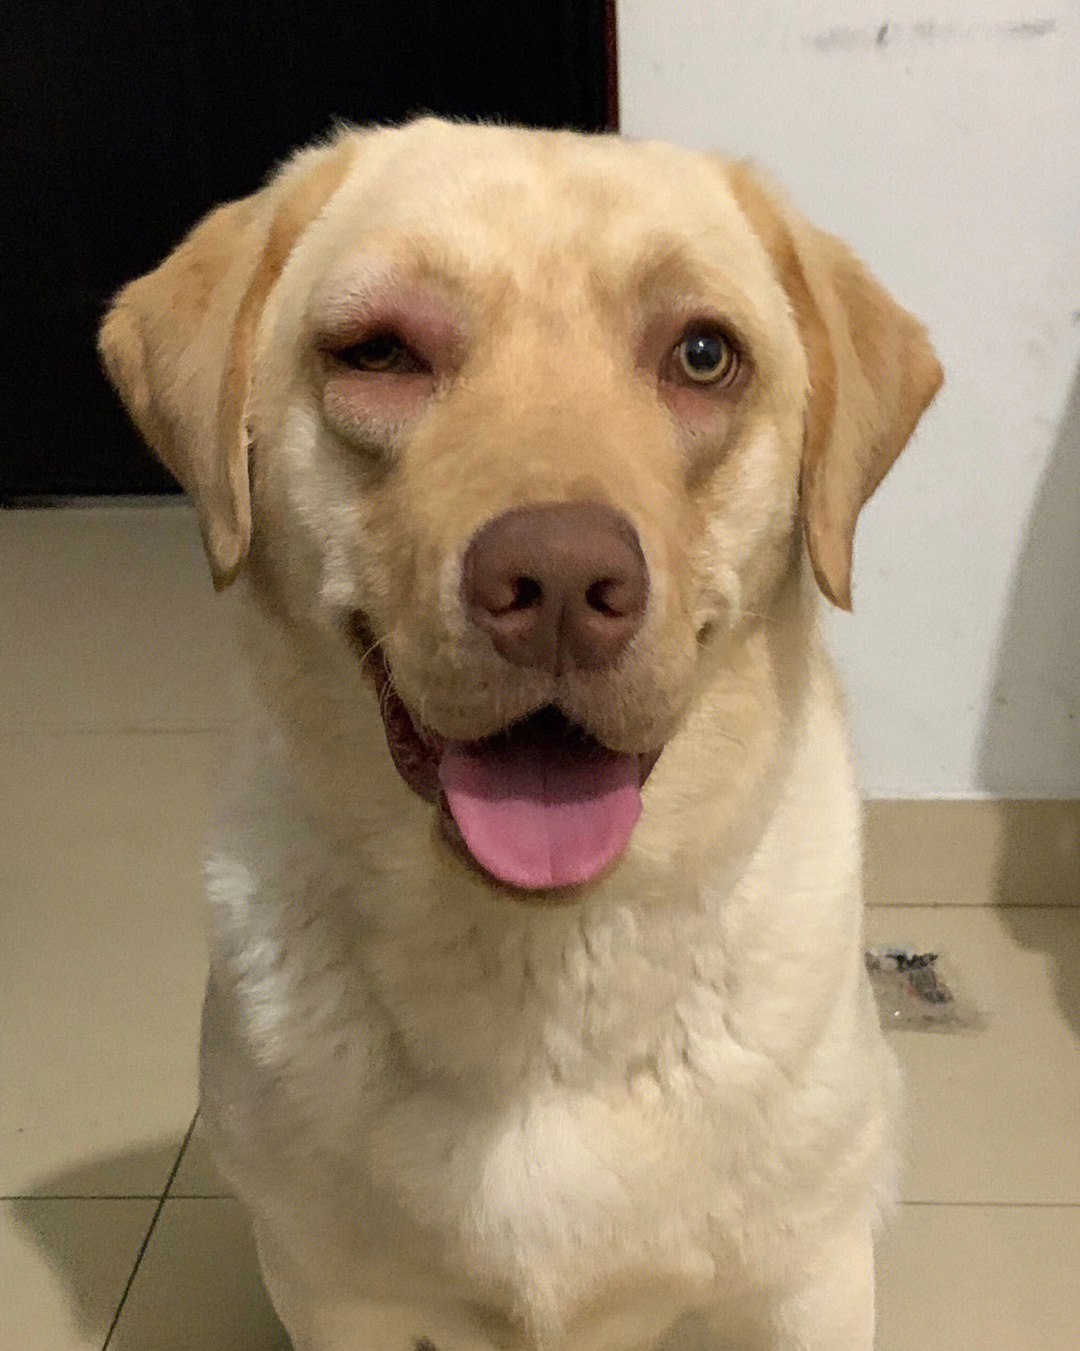 晚上到家  发现狗狗眼睛被蚊子叮肿了  又心疼又好笑哈哈哈哈哈09